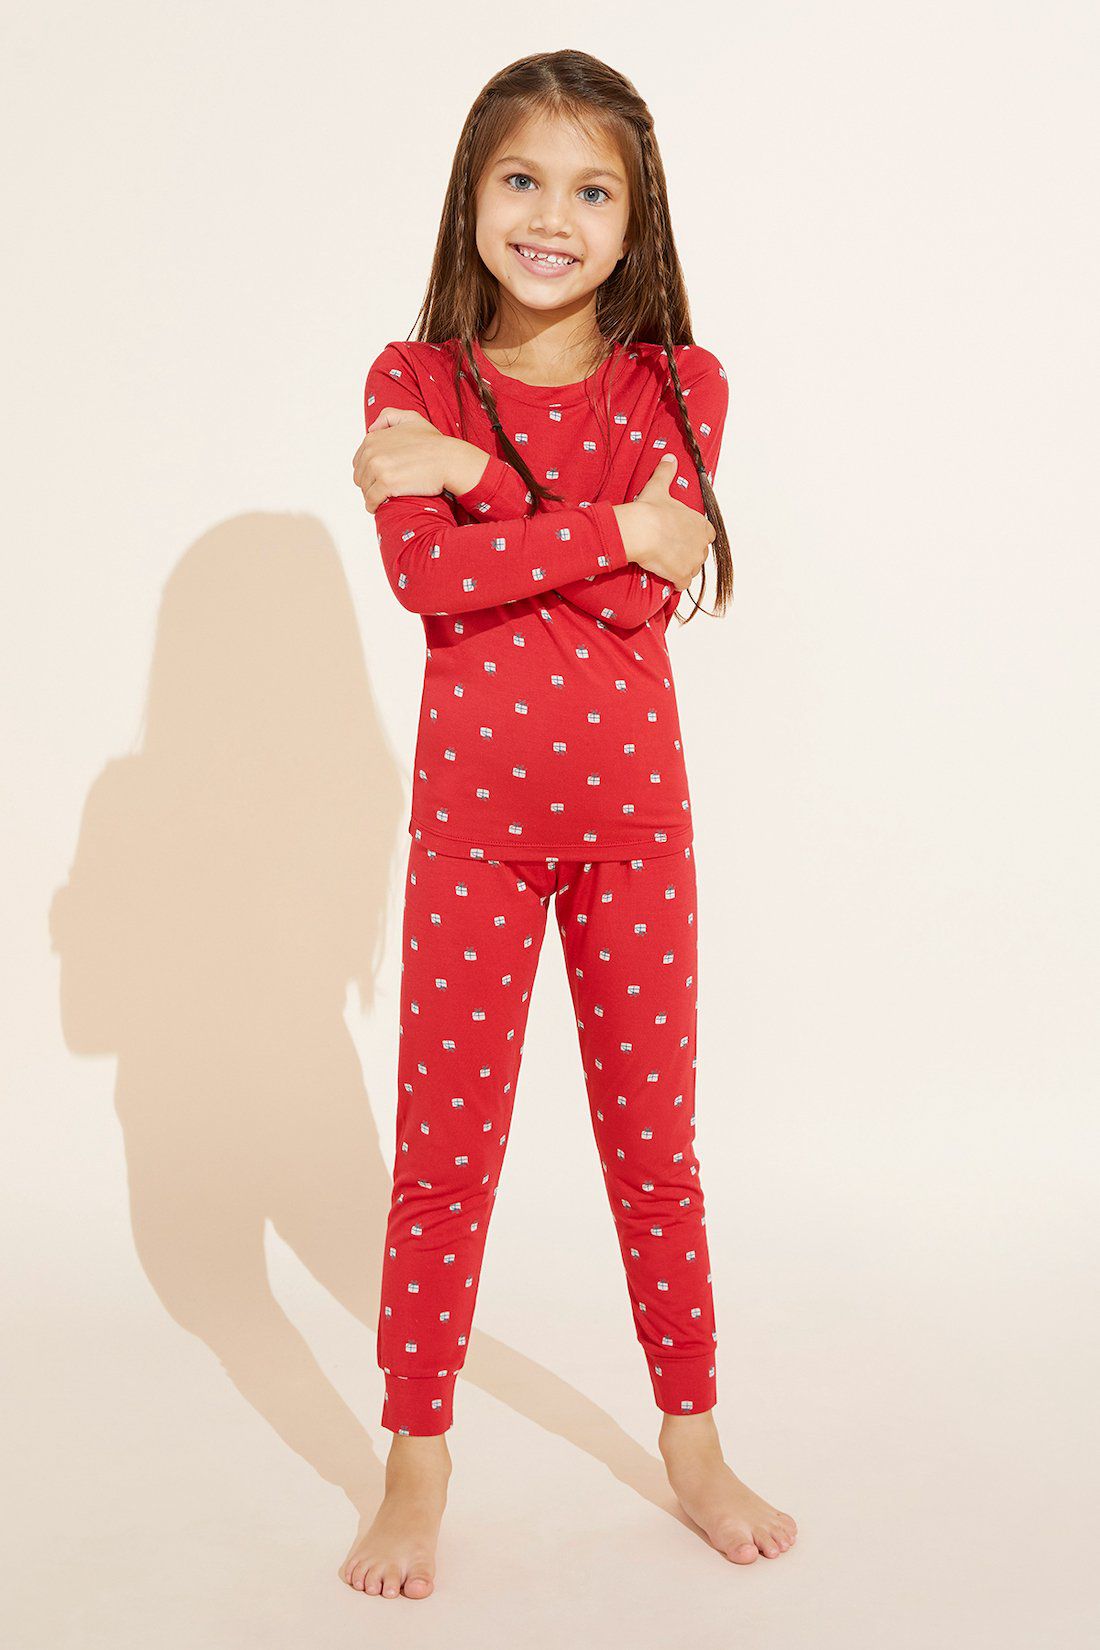 Eberjey "Mini Gisele" Printed Holiday Pajamas